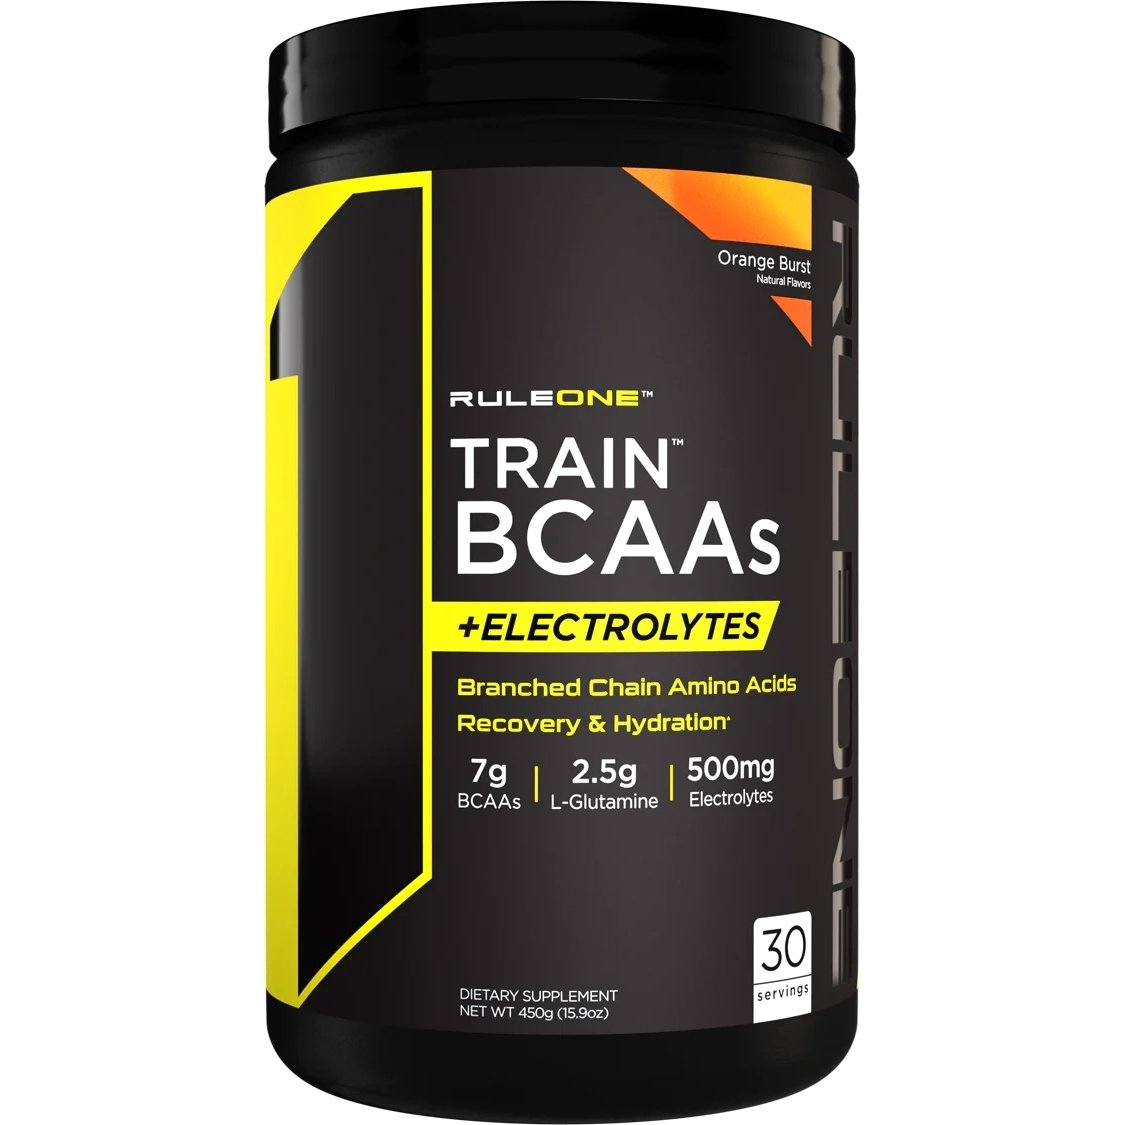 Аминокислота BCAA Rule 1 Train BCAAs + Electrolytes, 450 грамм Апельсин,  ml, Rule One Proteins. BCAA. Weight Loss स्वास्थ्य लाभ Anti-catabolic properties Lean muscle mass 